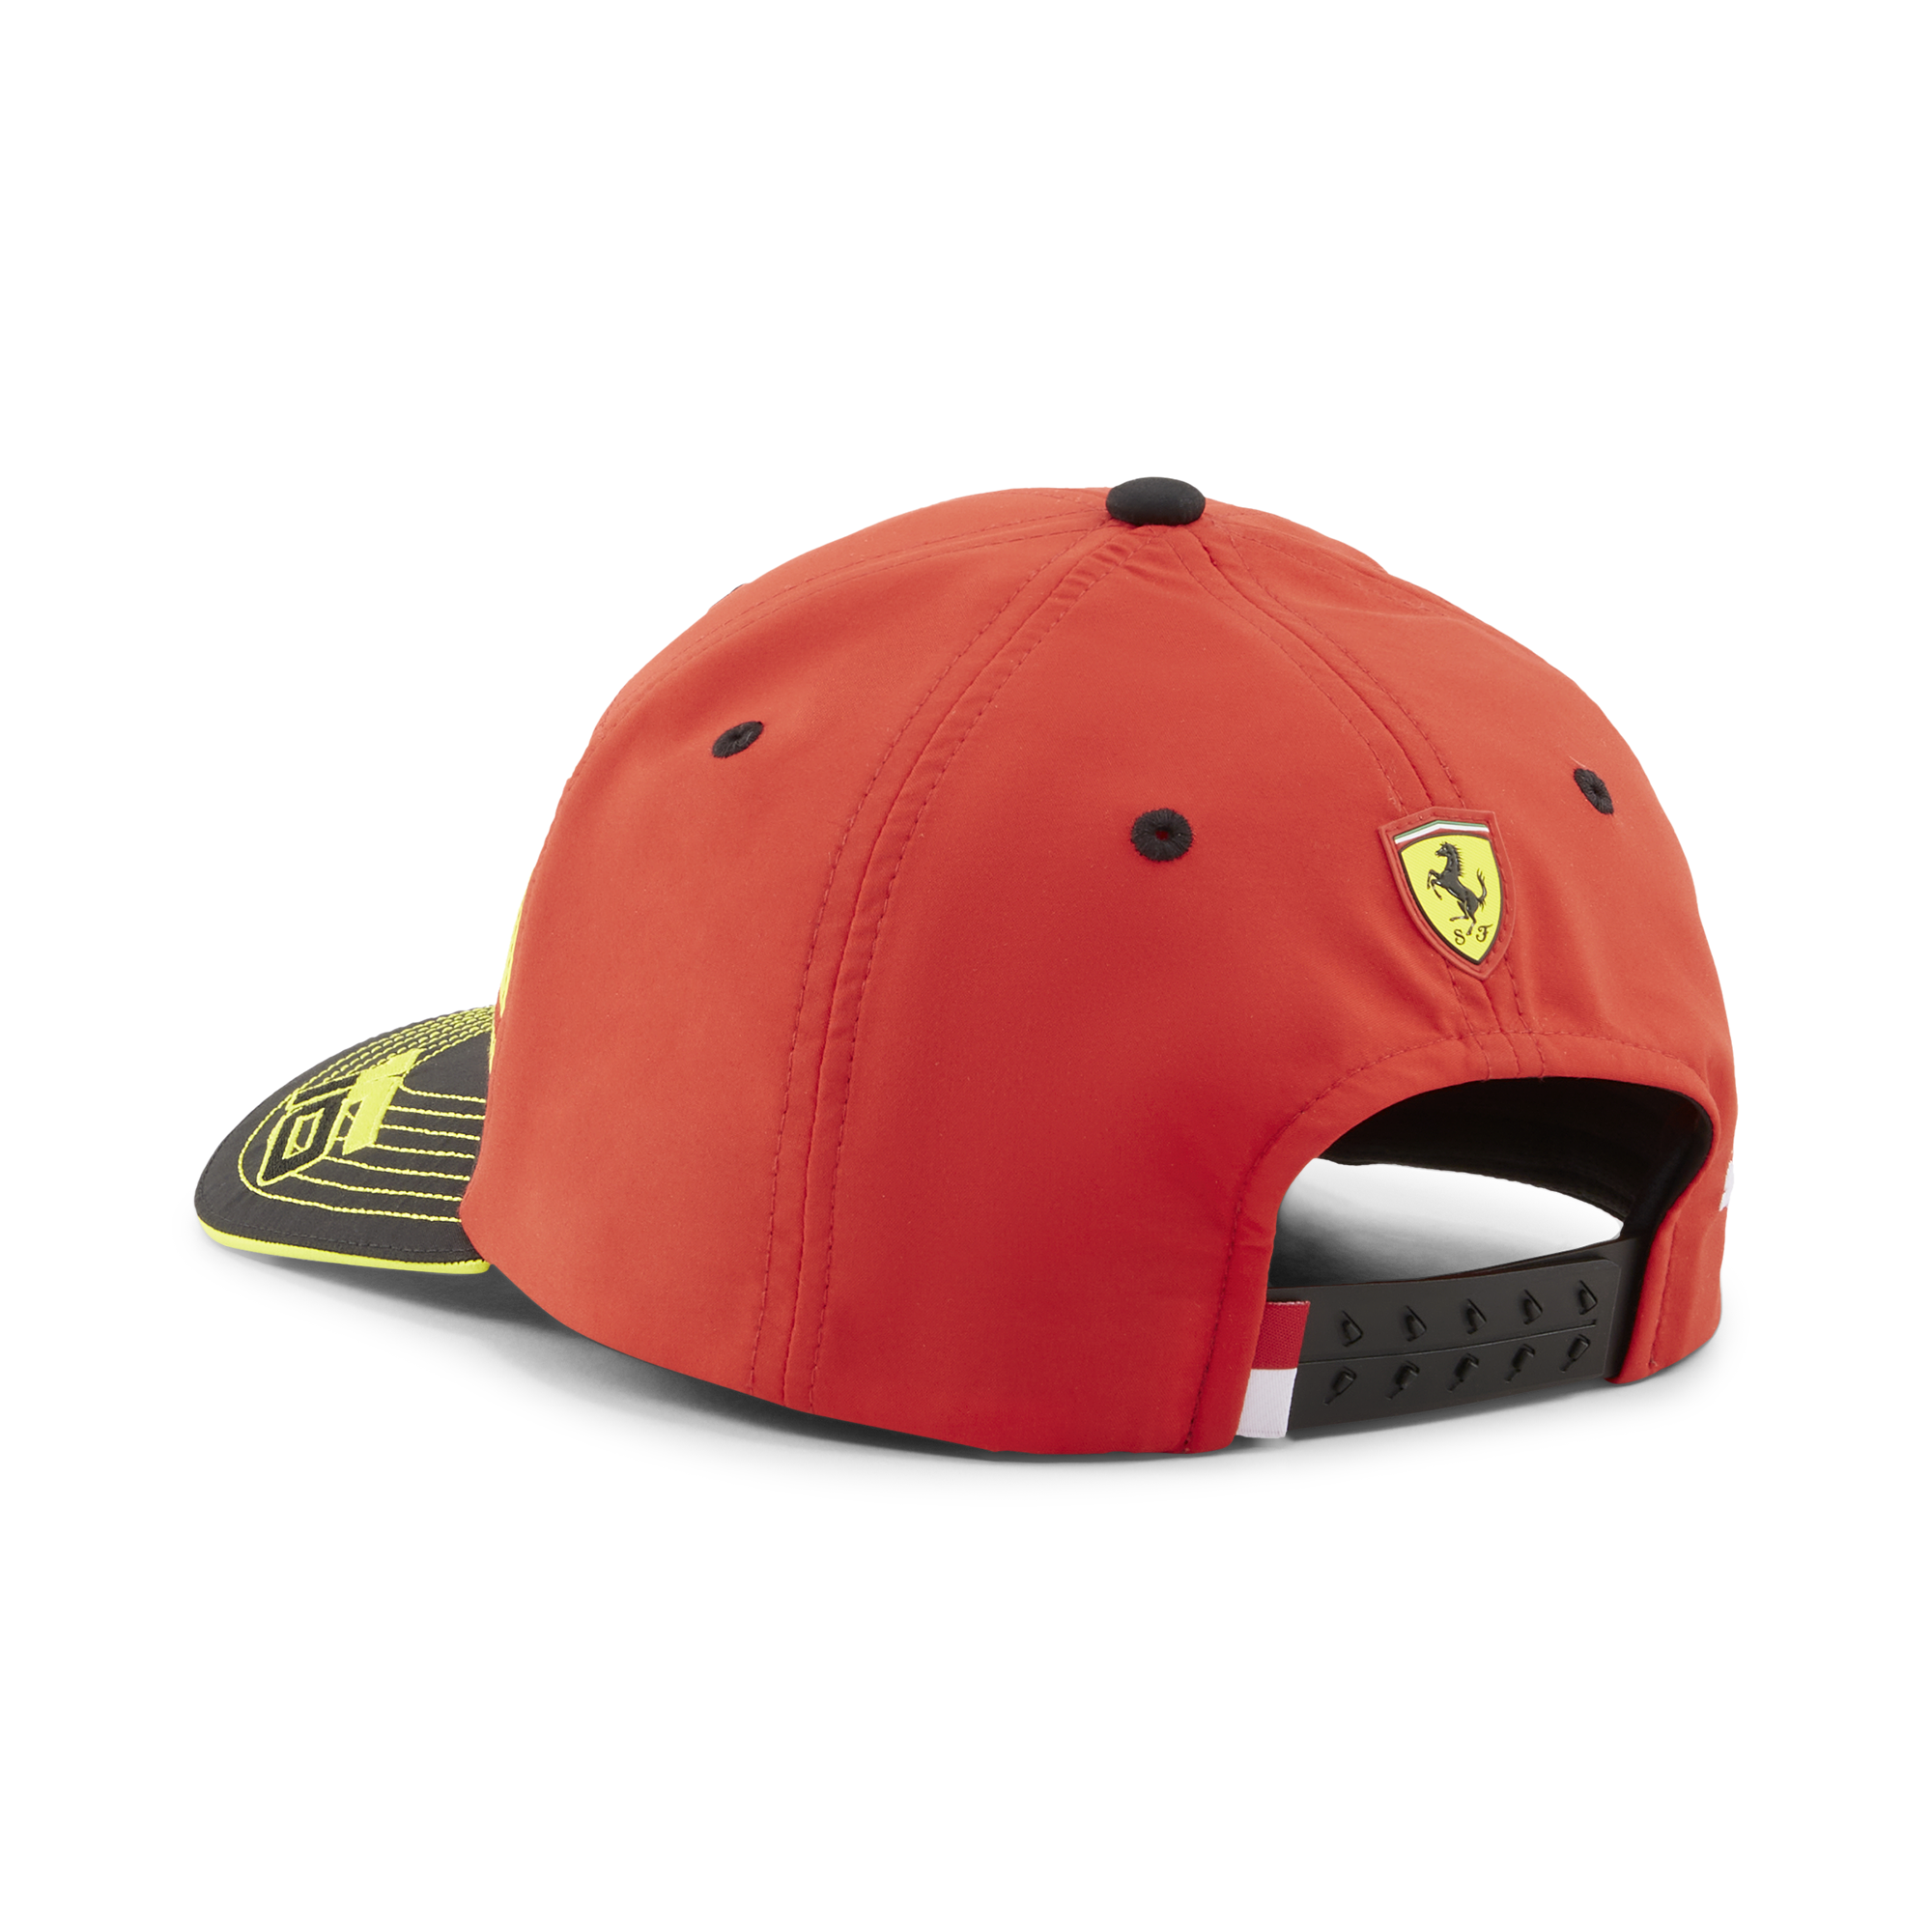 Offisiell Ferrari 2023 Monza GP Charles Leclerc Caps